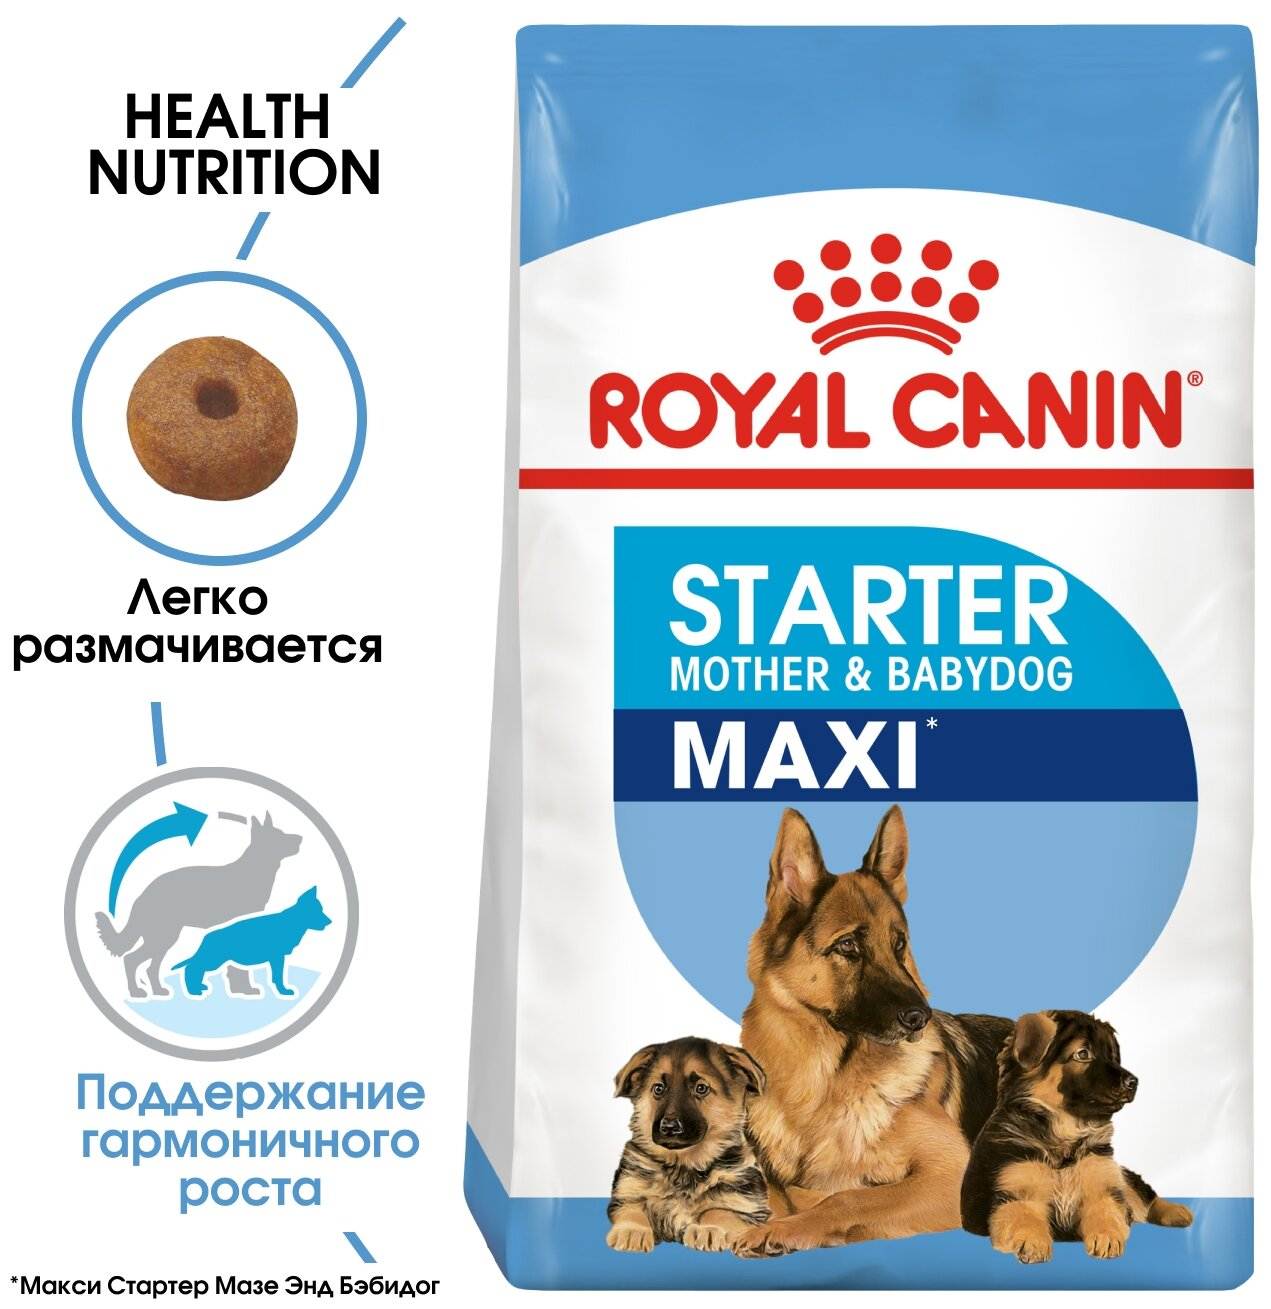 All dogs - высококачественные корма датского производства для собак любых пород